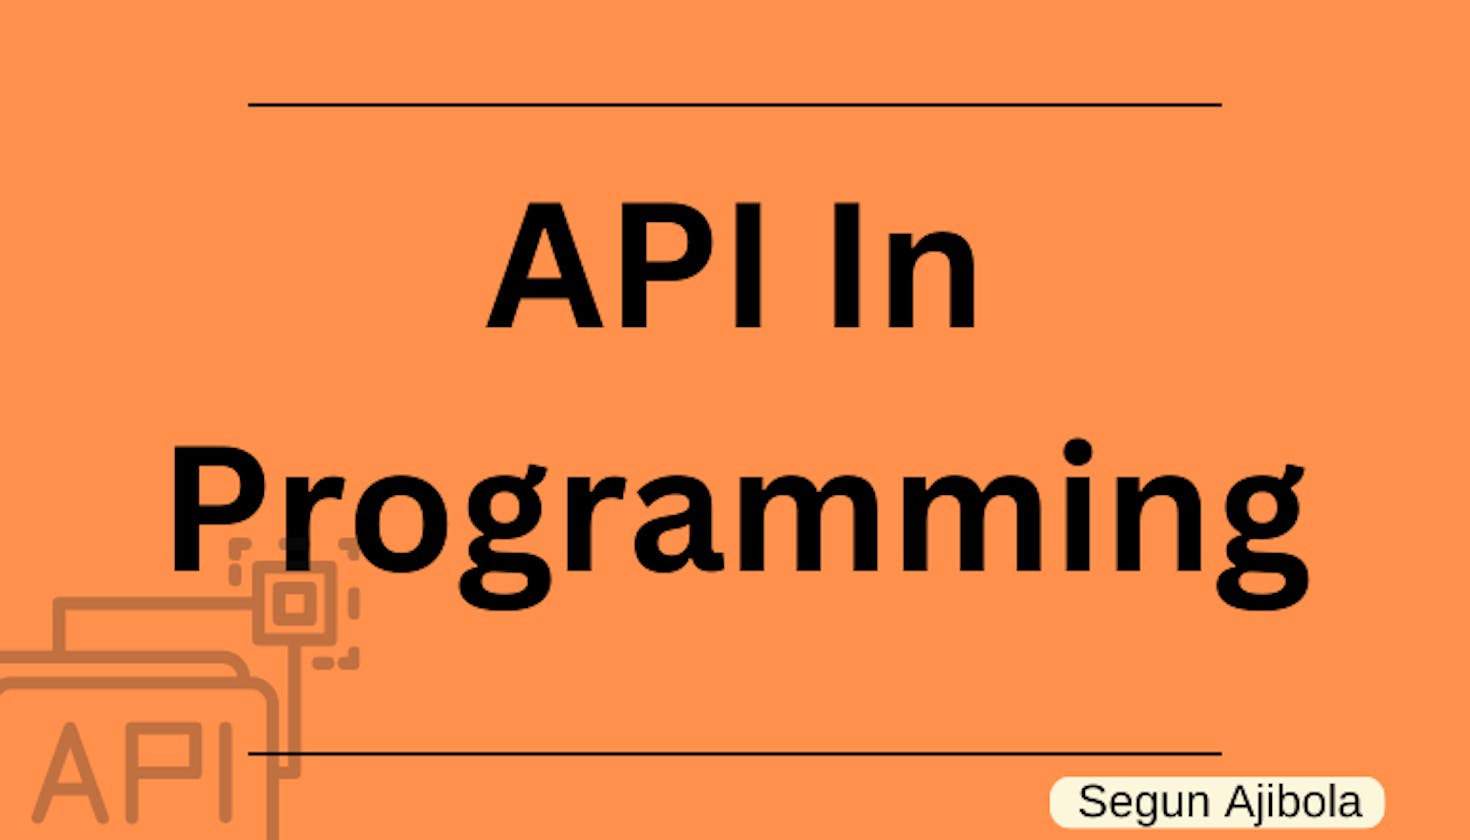 API in Programming